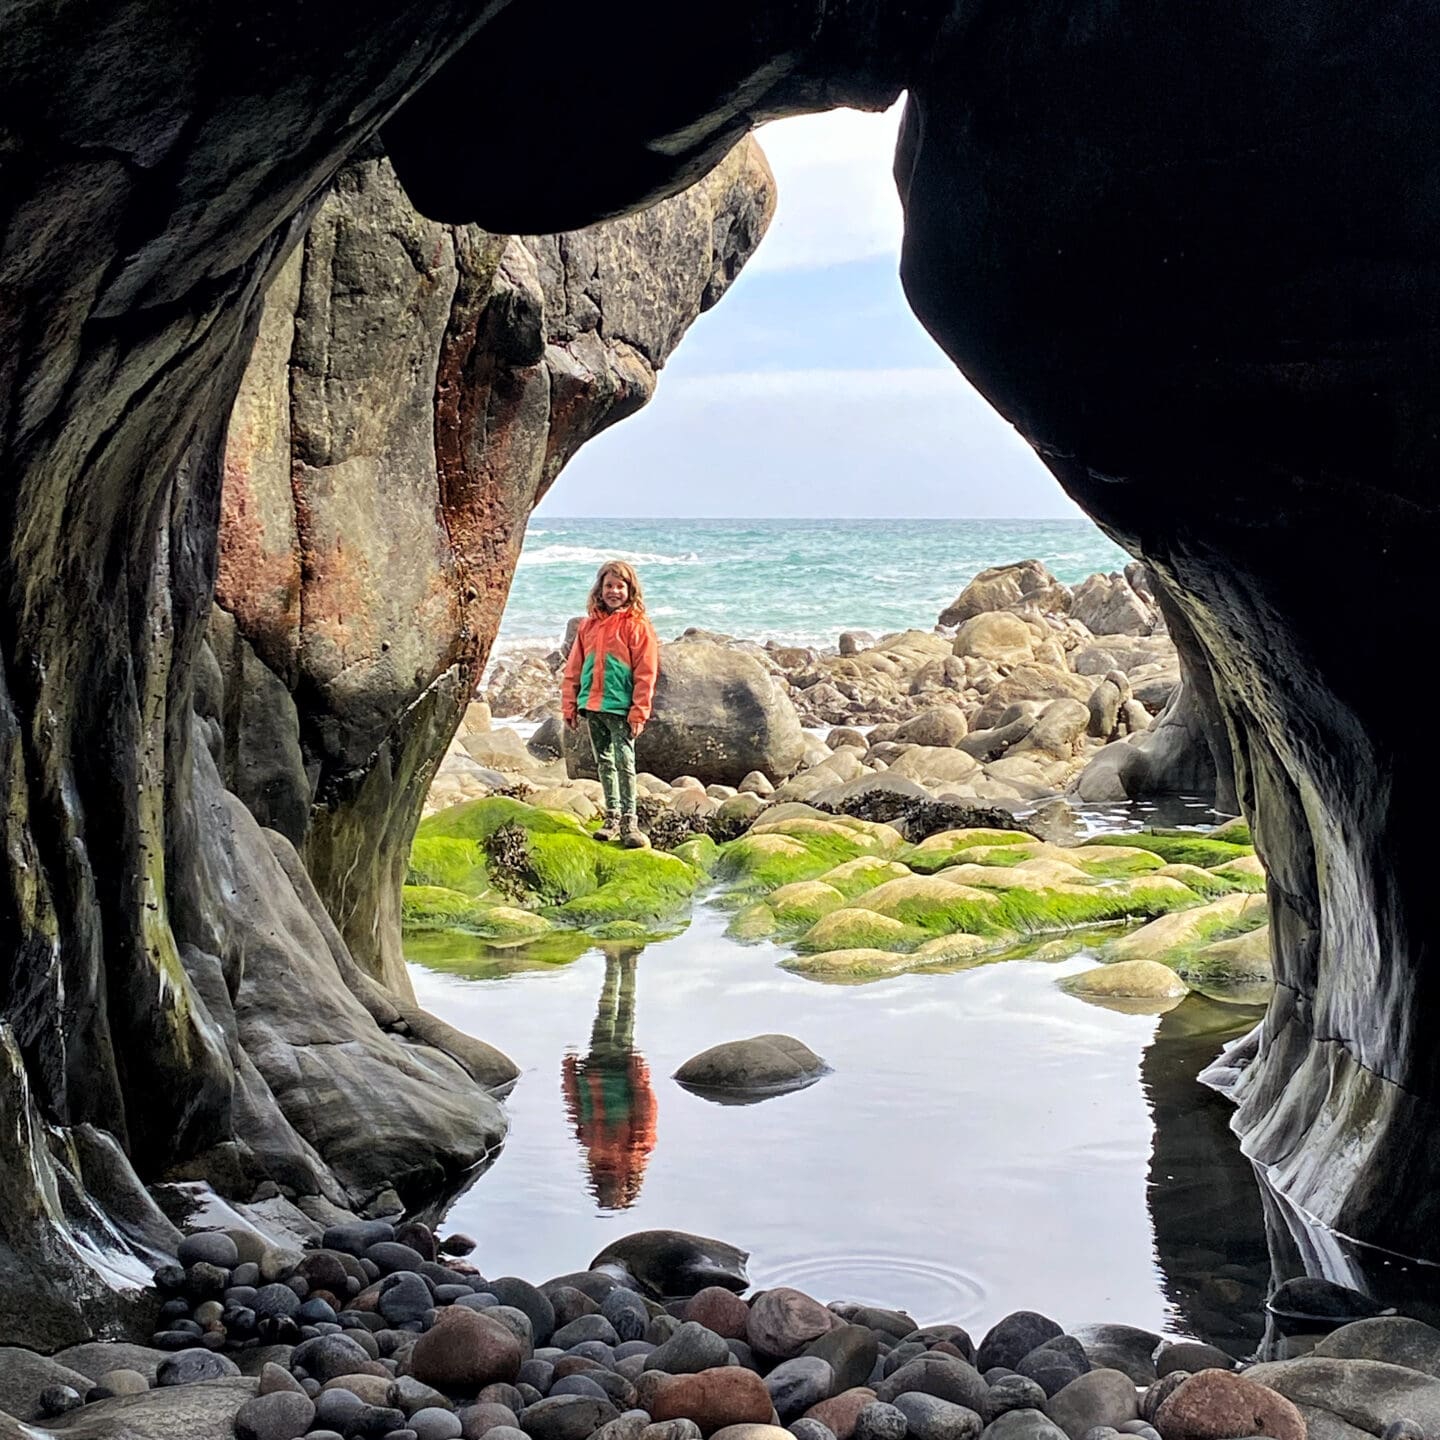 Child under natural rock archway